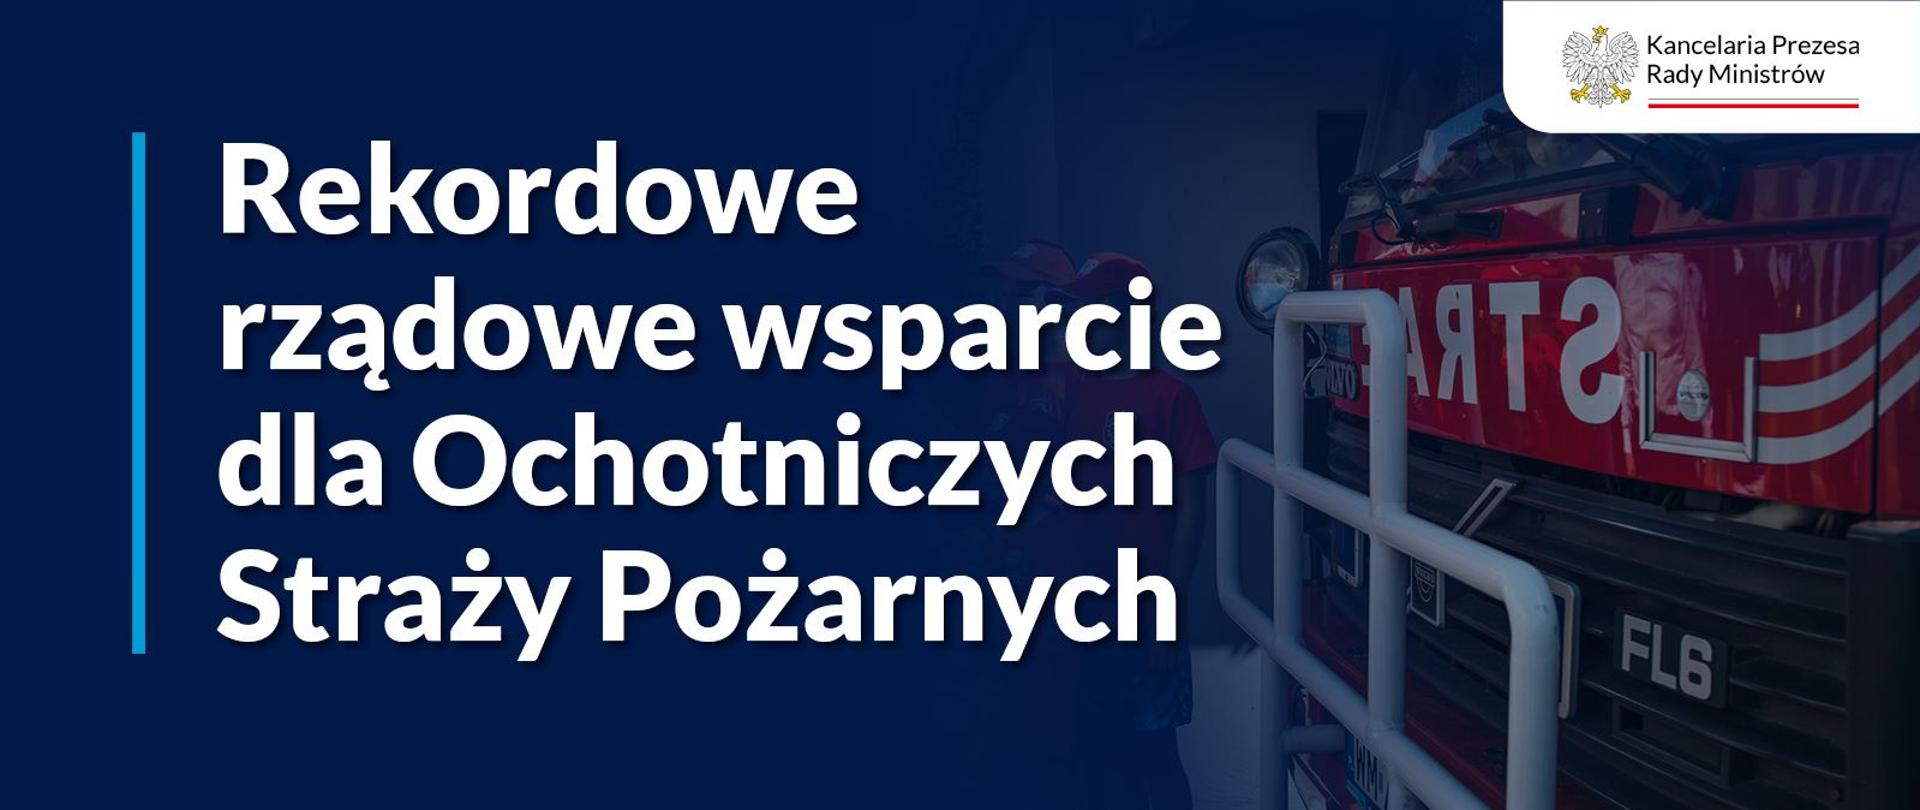 57 wozów strażackich dla Ochotniczych Straży Pożarnych z woj. śląskiego